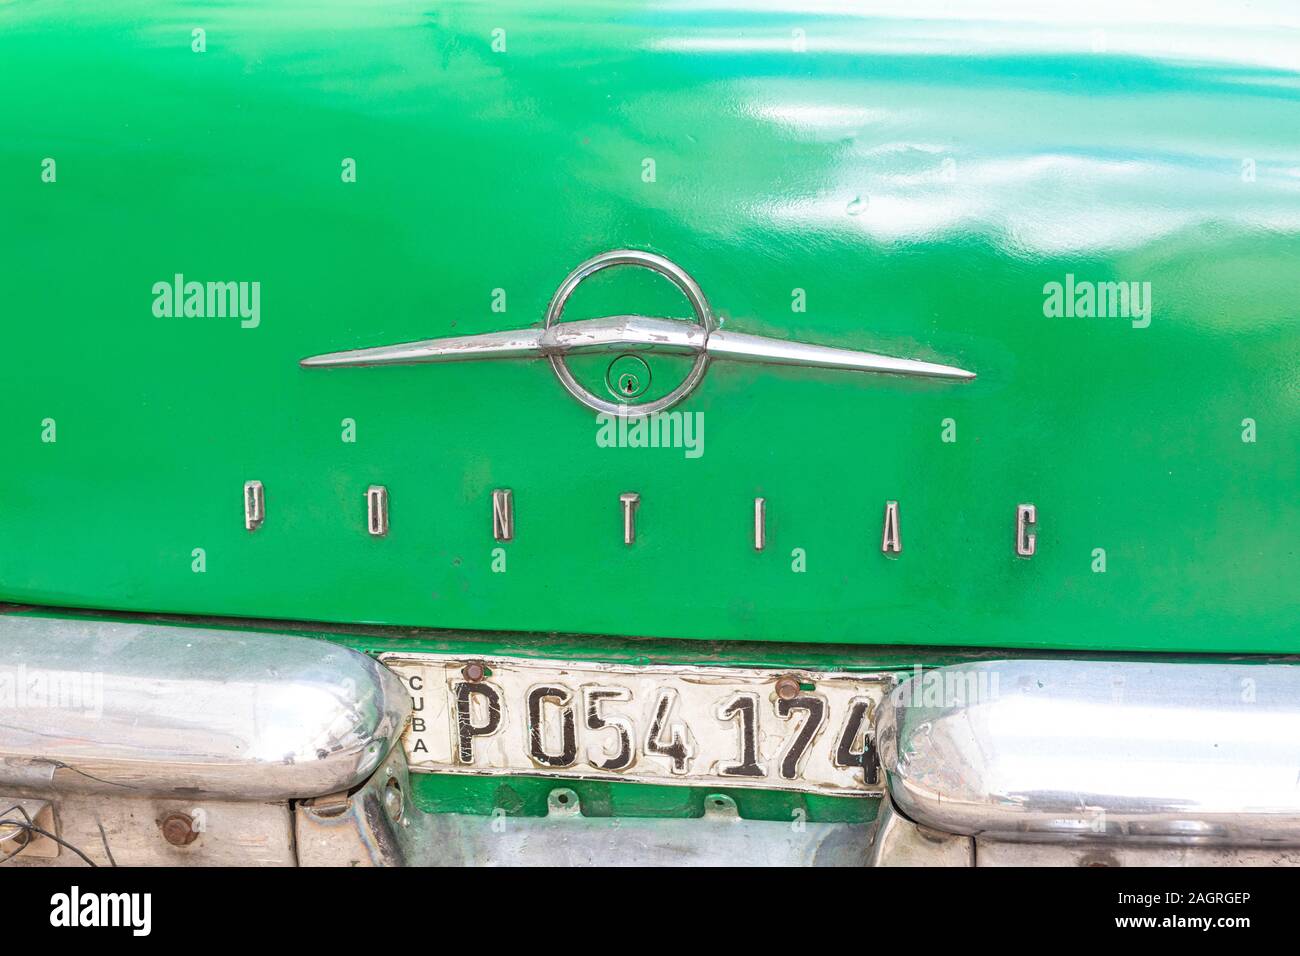 The logo on a Pontiac car in Havana, Cuba. Stock Photo